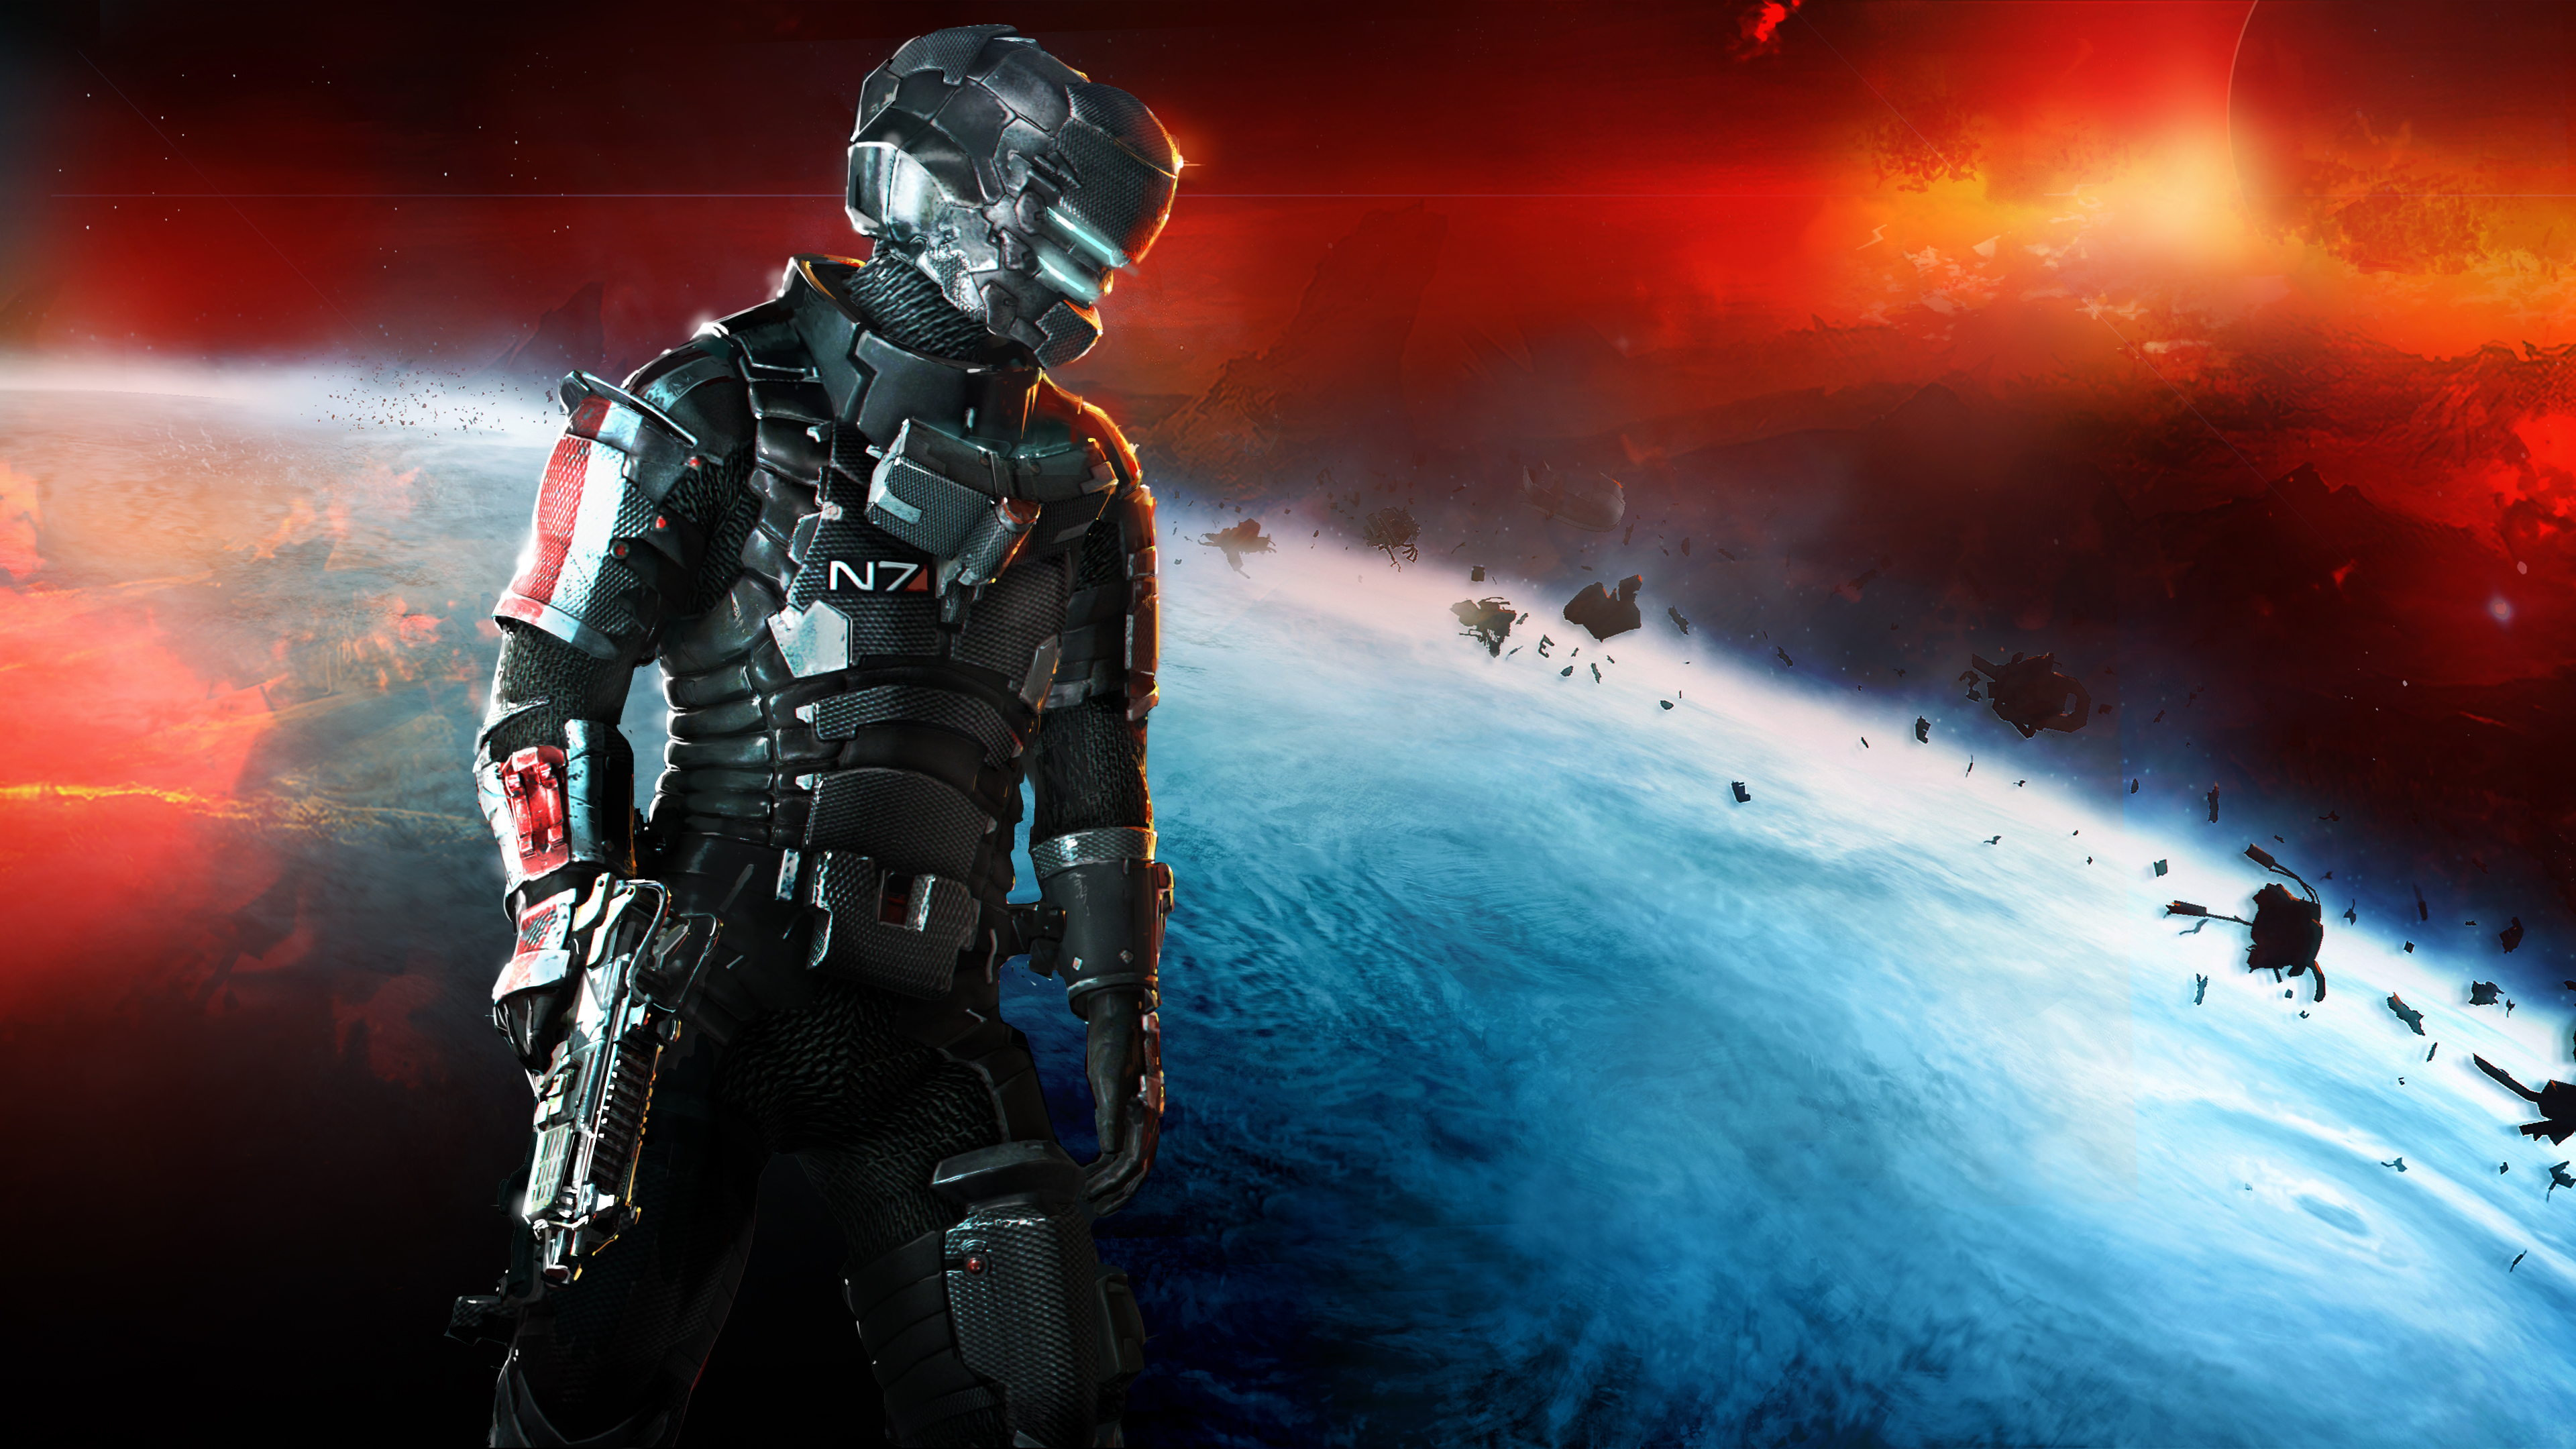 Image: Dead Space 2, engineer, Isaac Clarke, N7, costume, weapons, spacesuit, space, planet, garbage